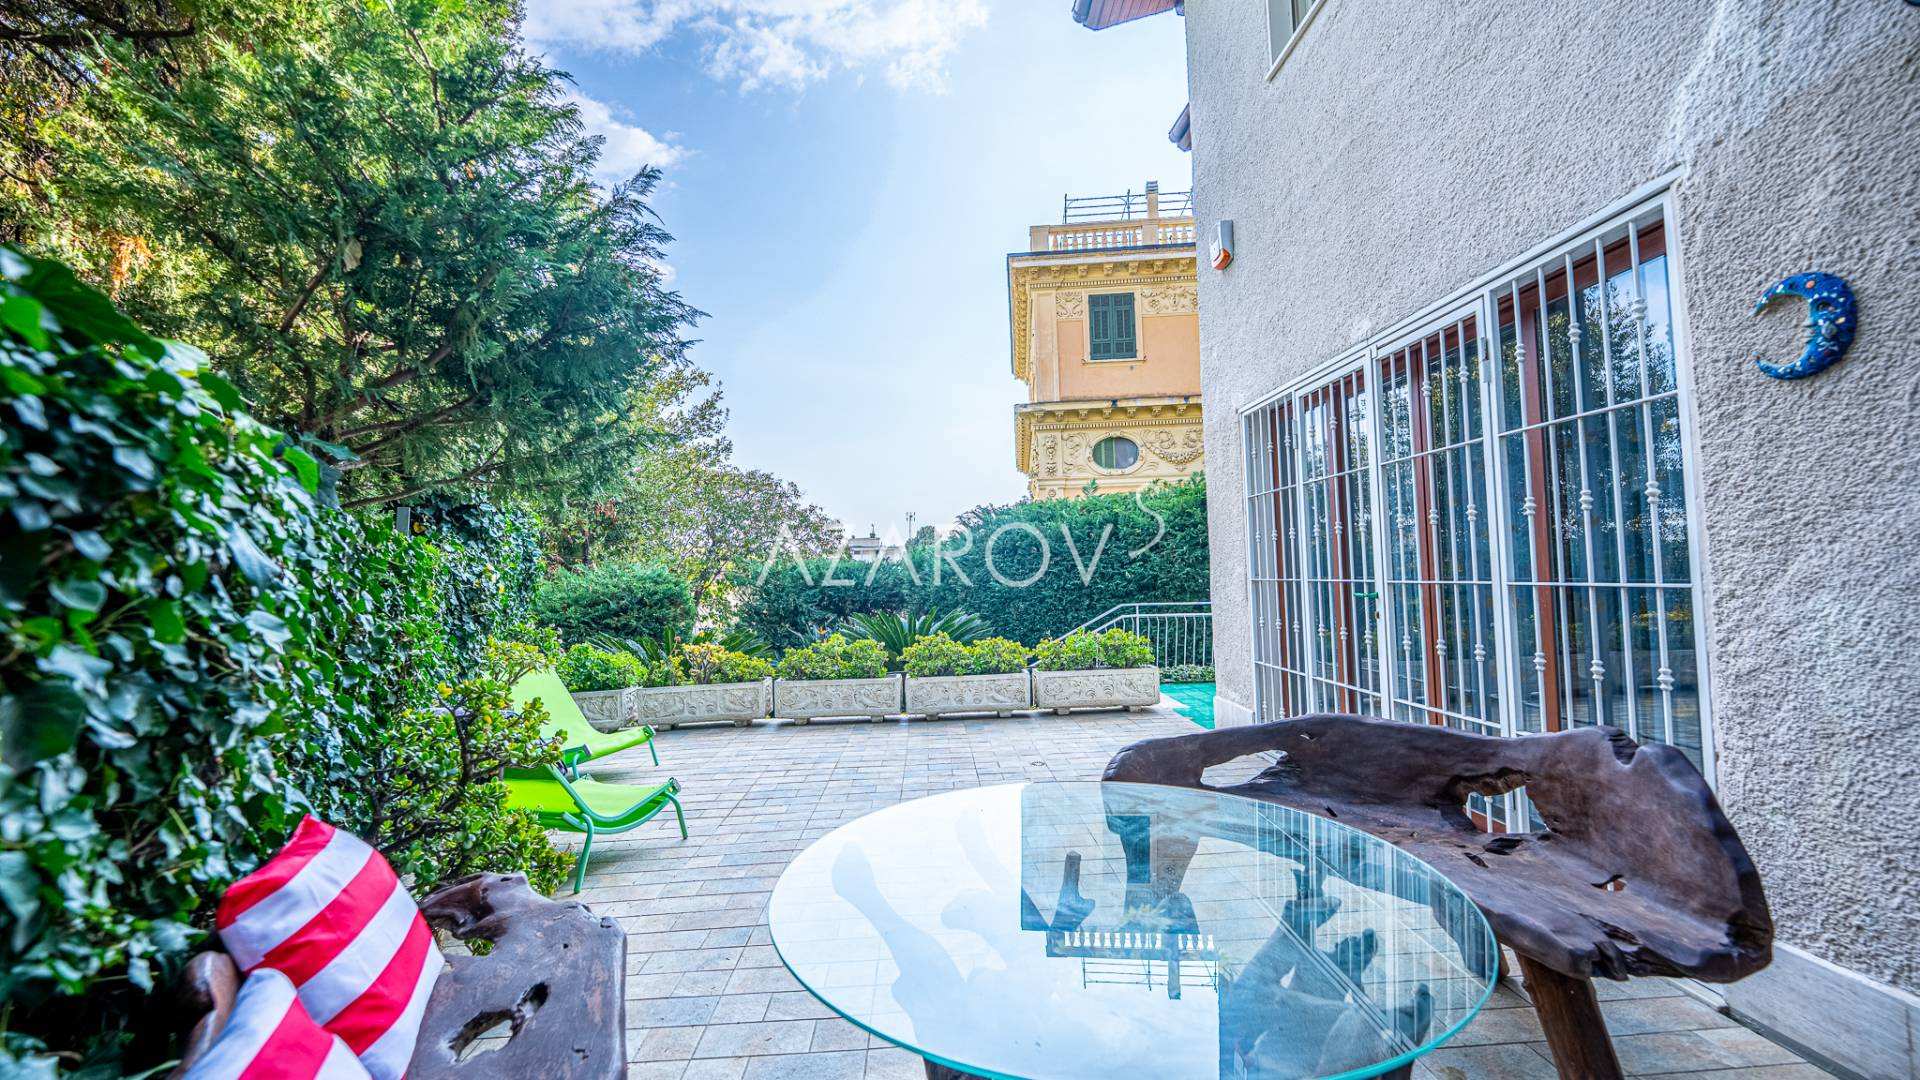 Villa in het centrum van Sanremo vlakbij de zee